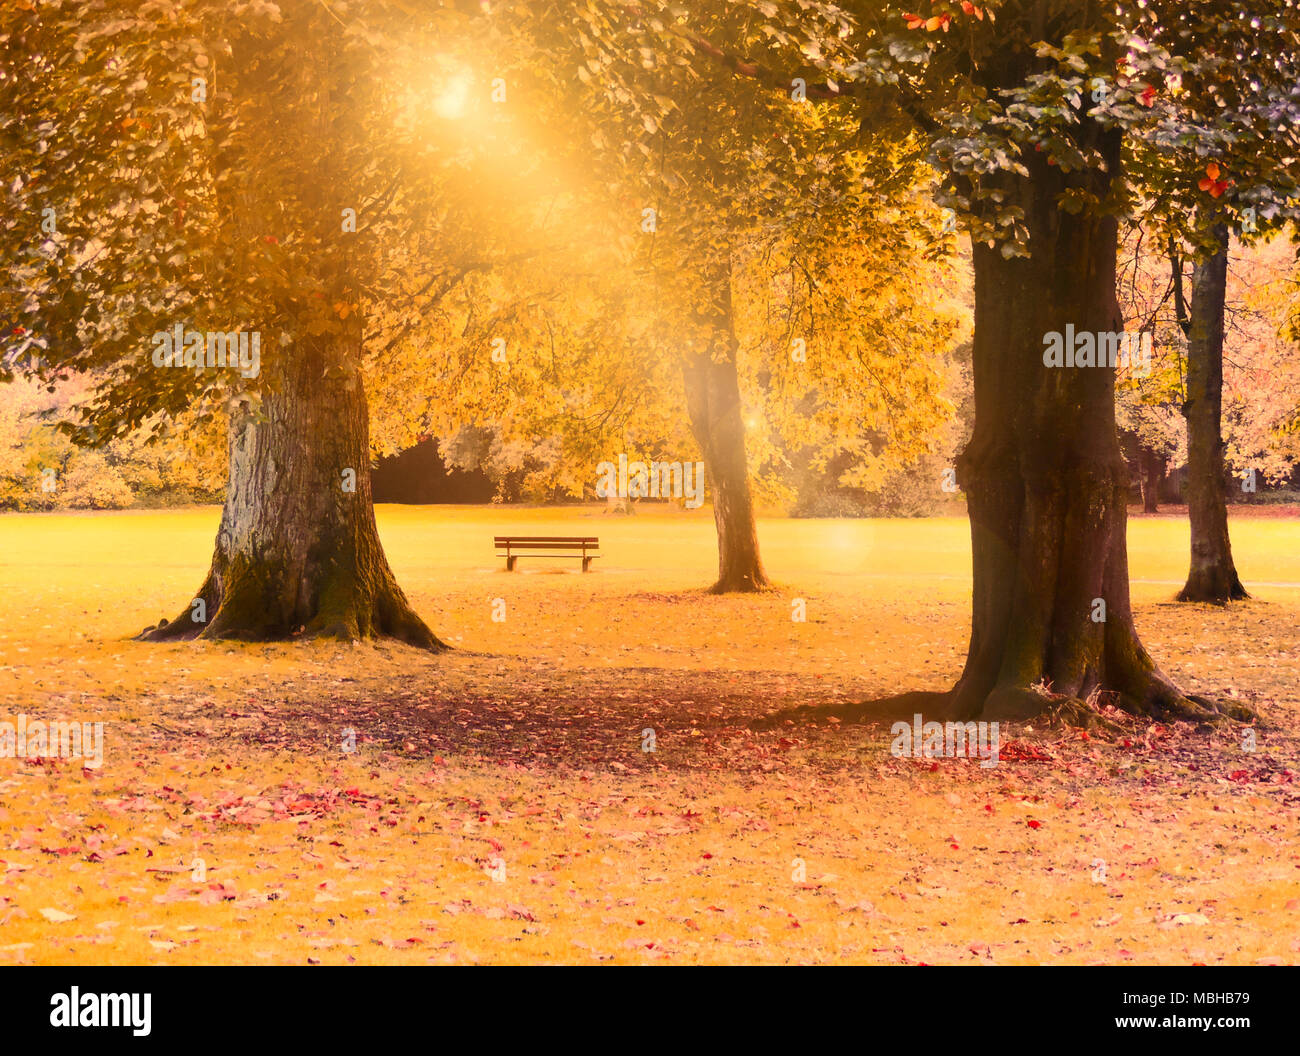 Automne fond, scène de parc avec arbres colorés et pré. Feuillage de l'automne, scène idyllique à l'automne. Banque D'Images